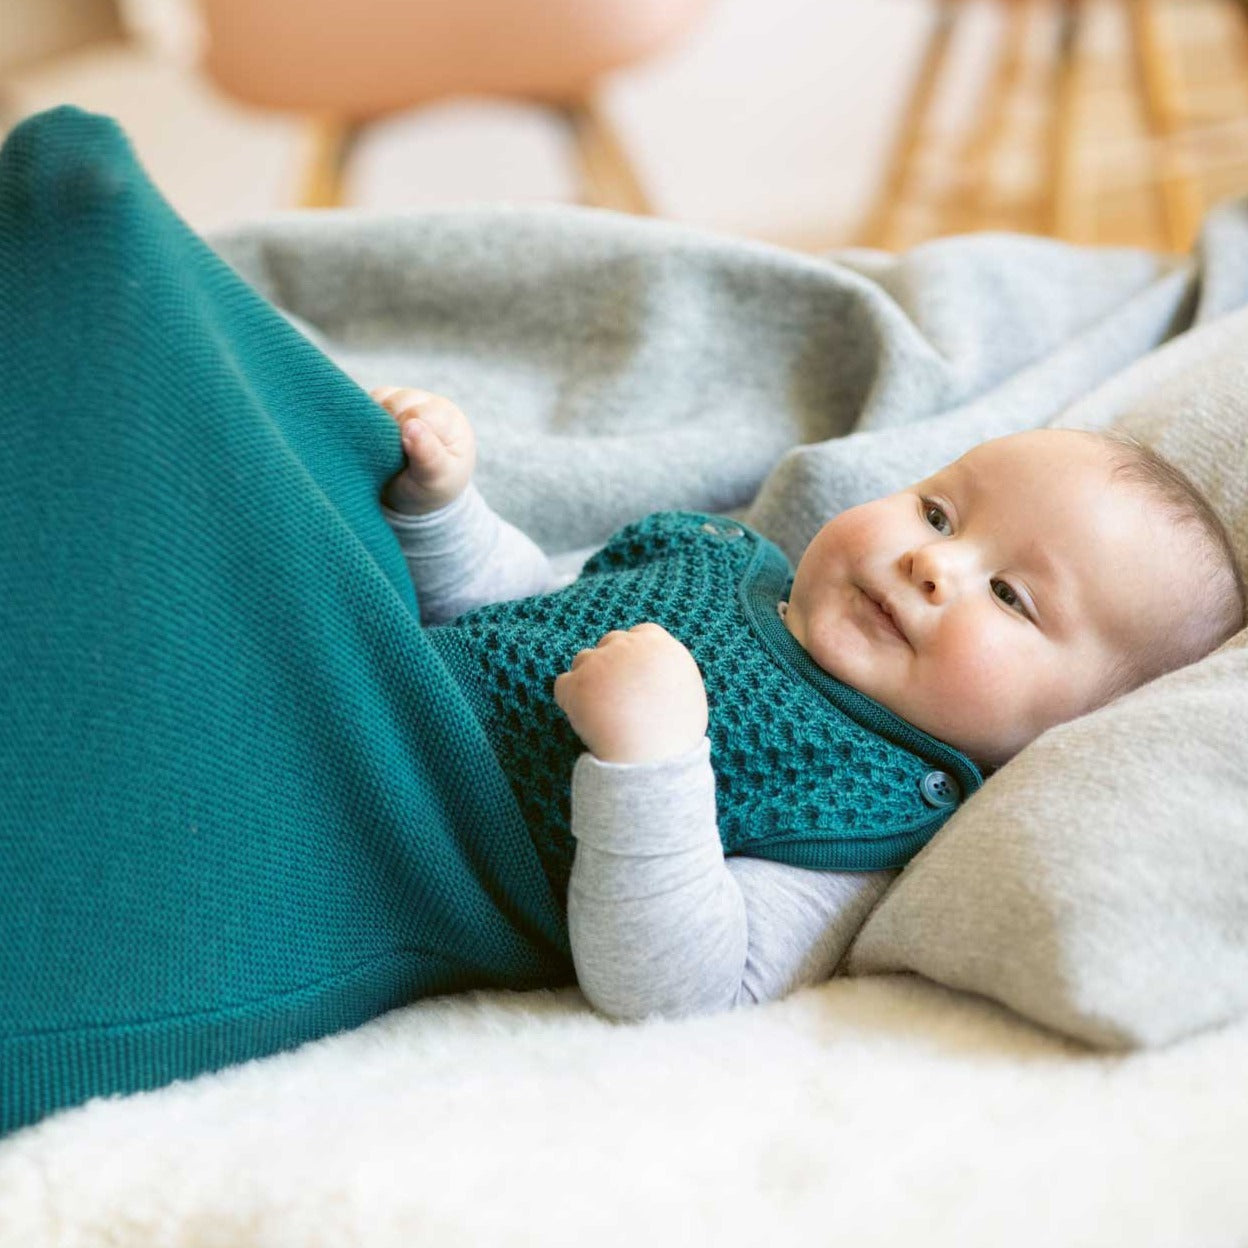 Hocosa Baby Body Wool/Silk - Green: Soft & Comfy!